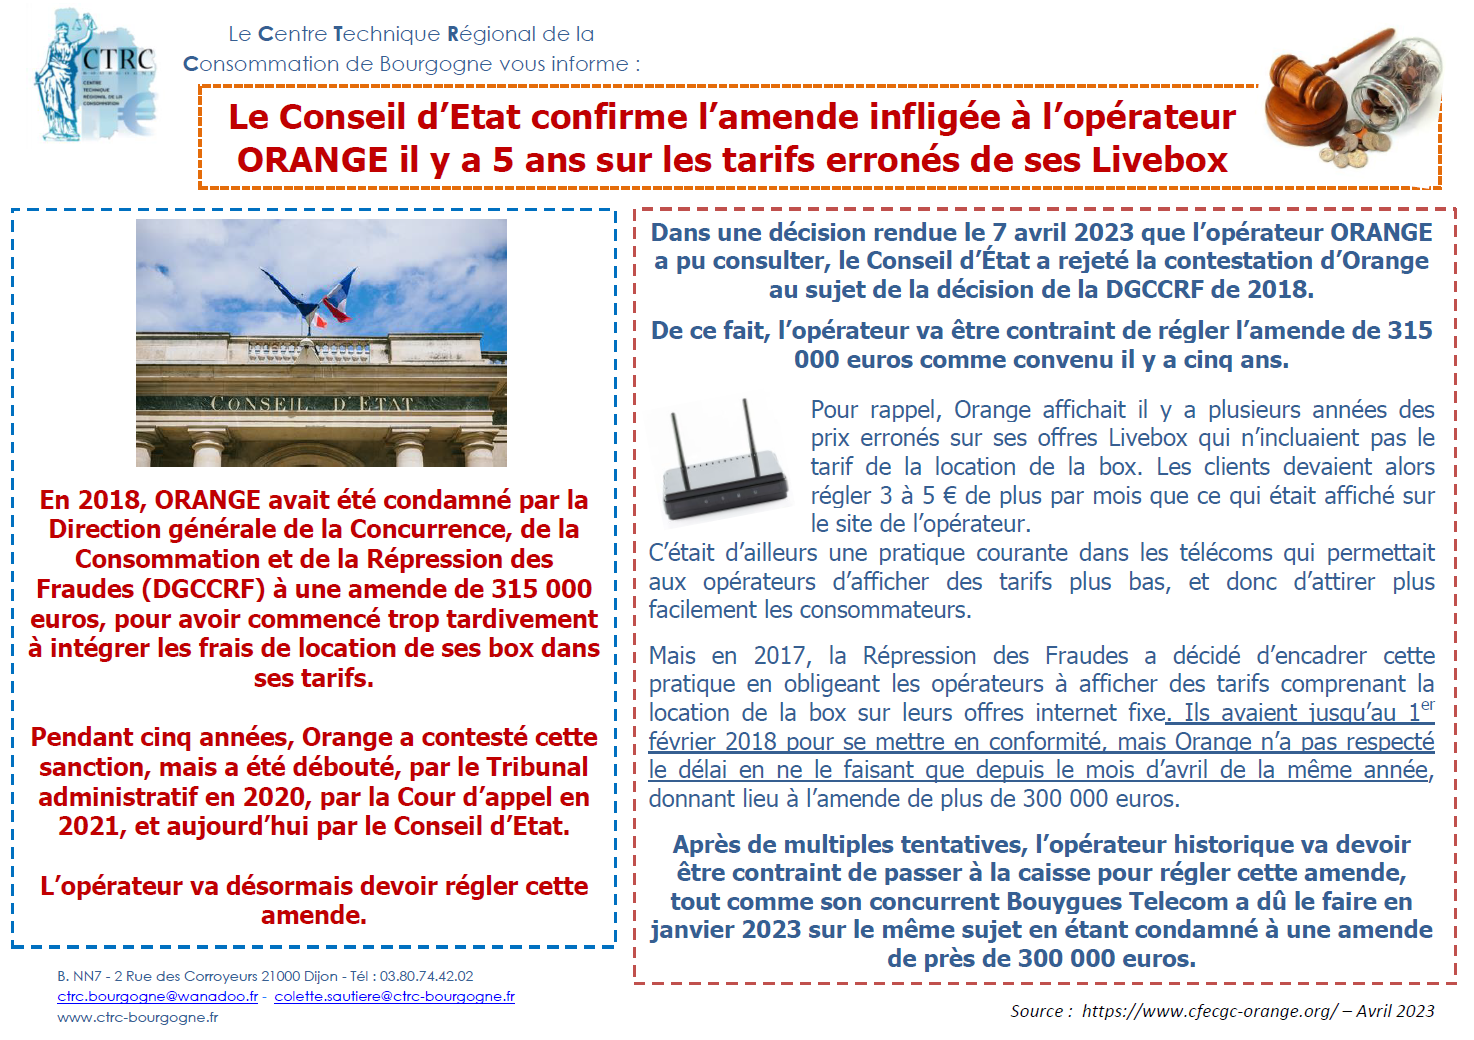 Le Conseil d'Etat confirme l'amende infligée à l'opérateur ORANGE il y a 5 ans sur les tarifs erronés de ses Livebox - communiqué d'information - CTRC de Bourgogne - 18.04.2023